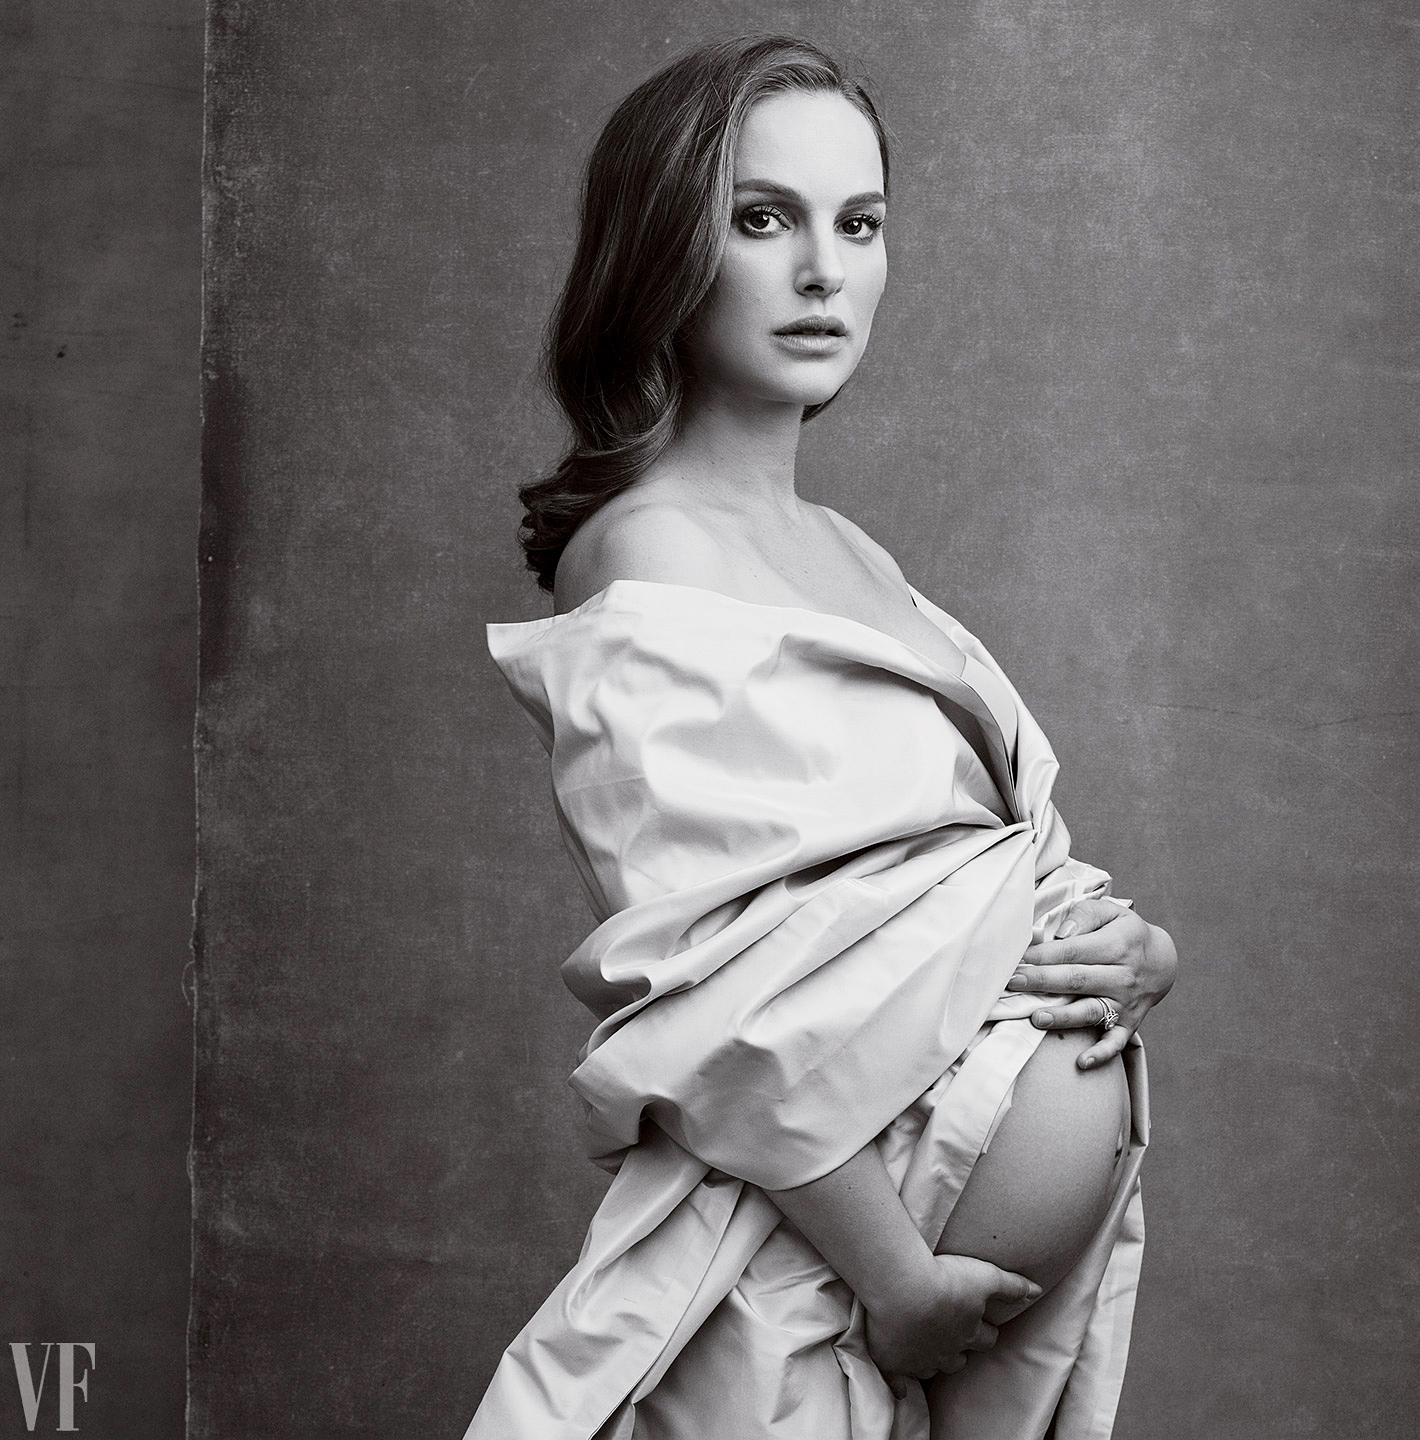 Demi Moore Nude Pregnant - Pregnant Natalie Portman Channels Demi Moore in Bare Bump Pic